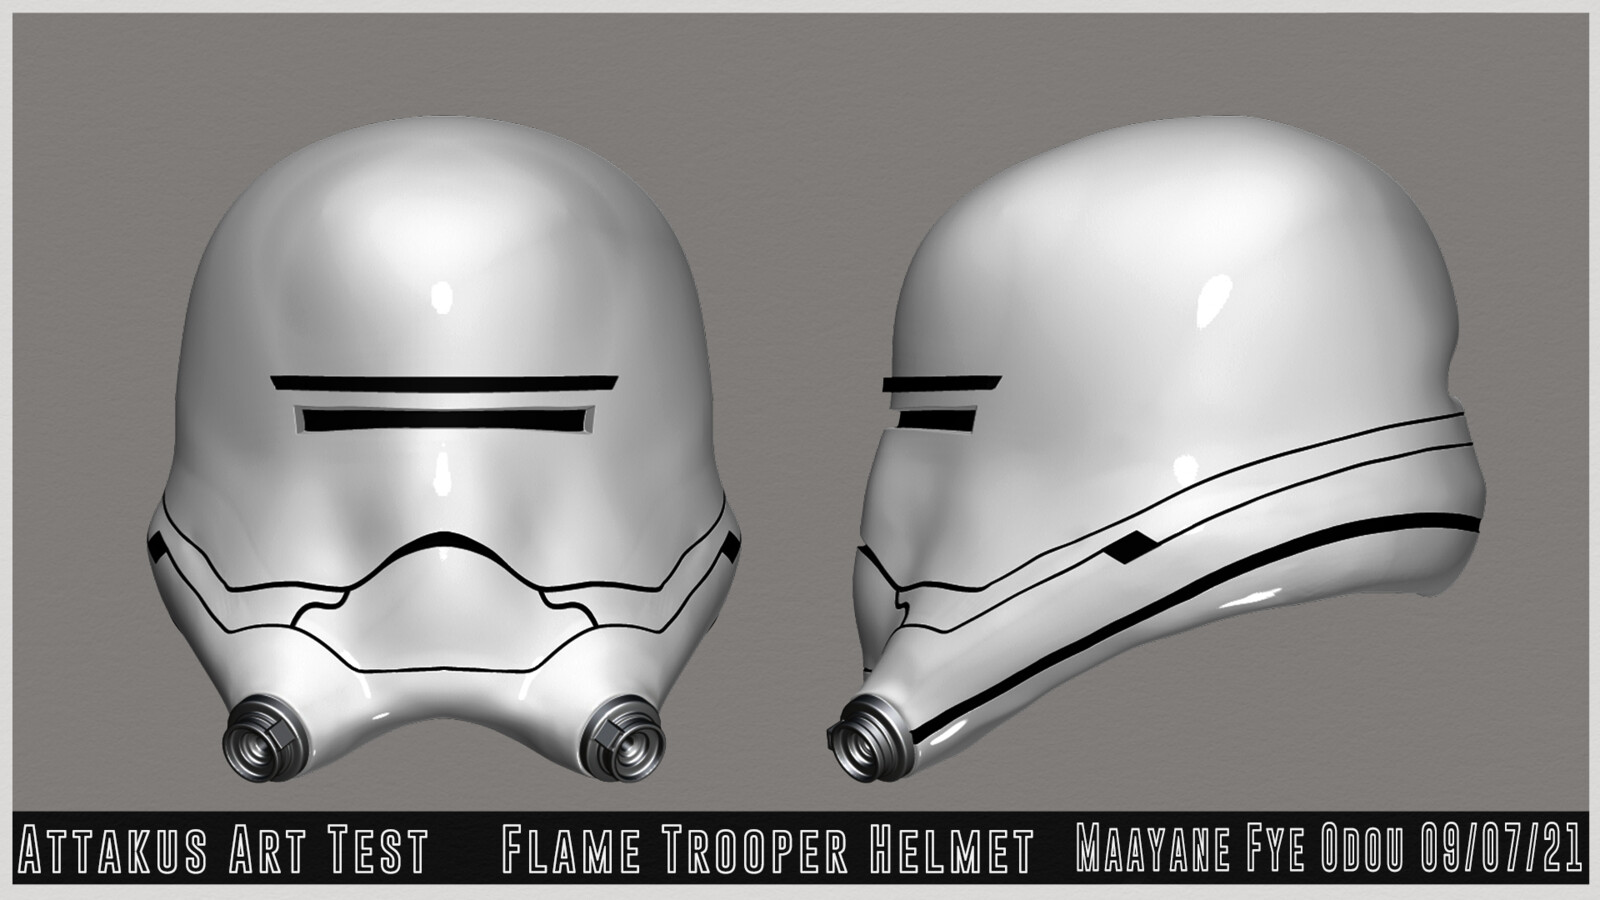 Flame trooper Helmet